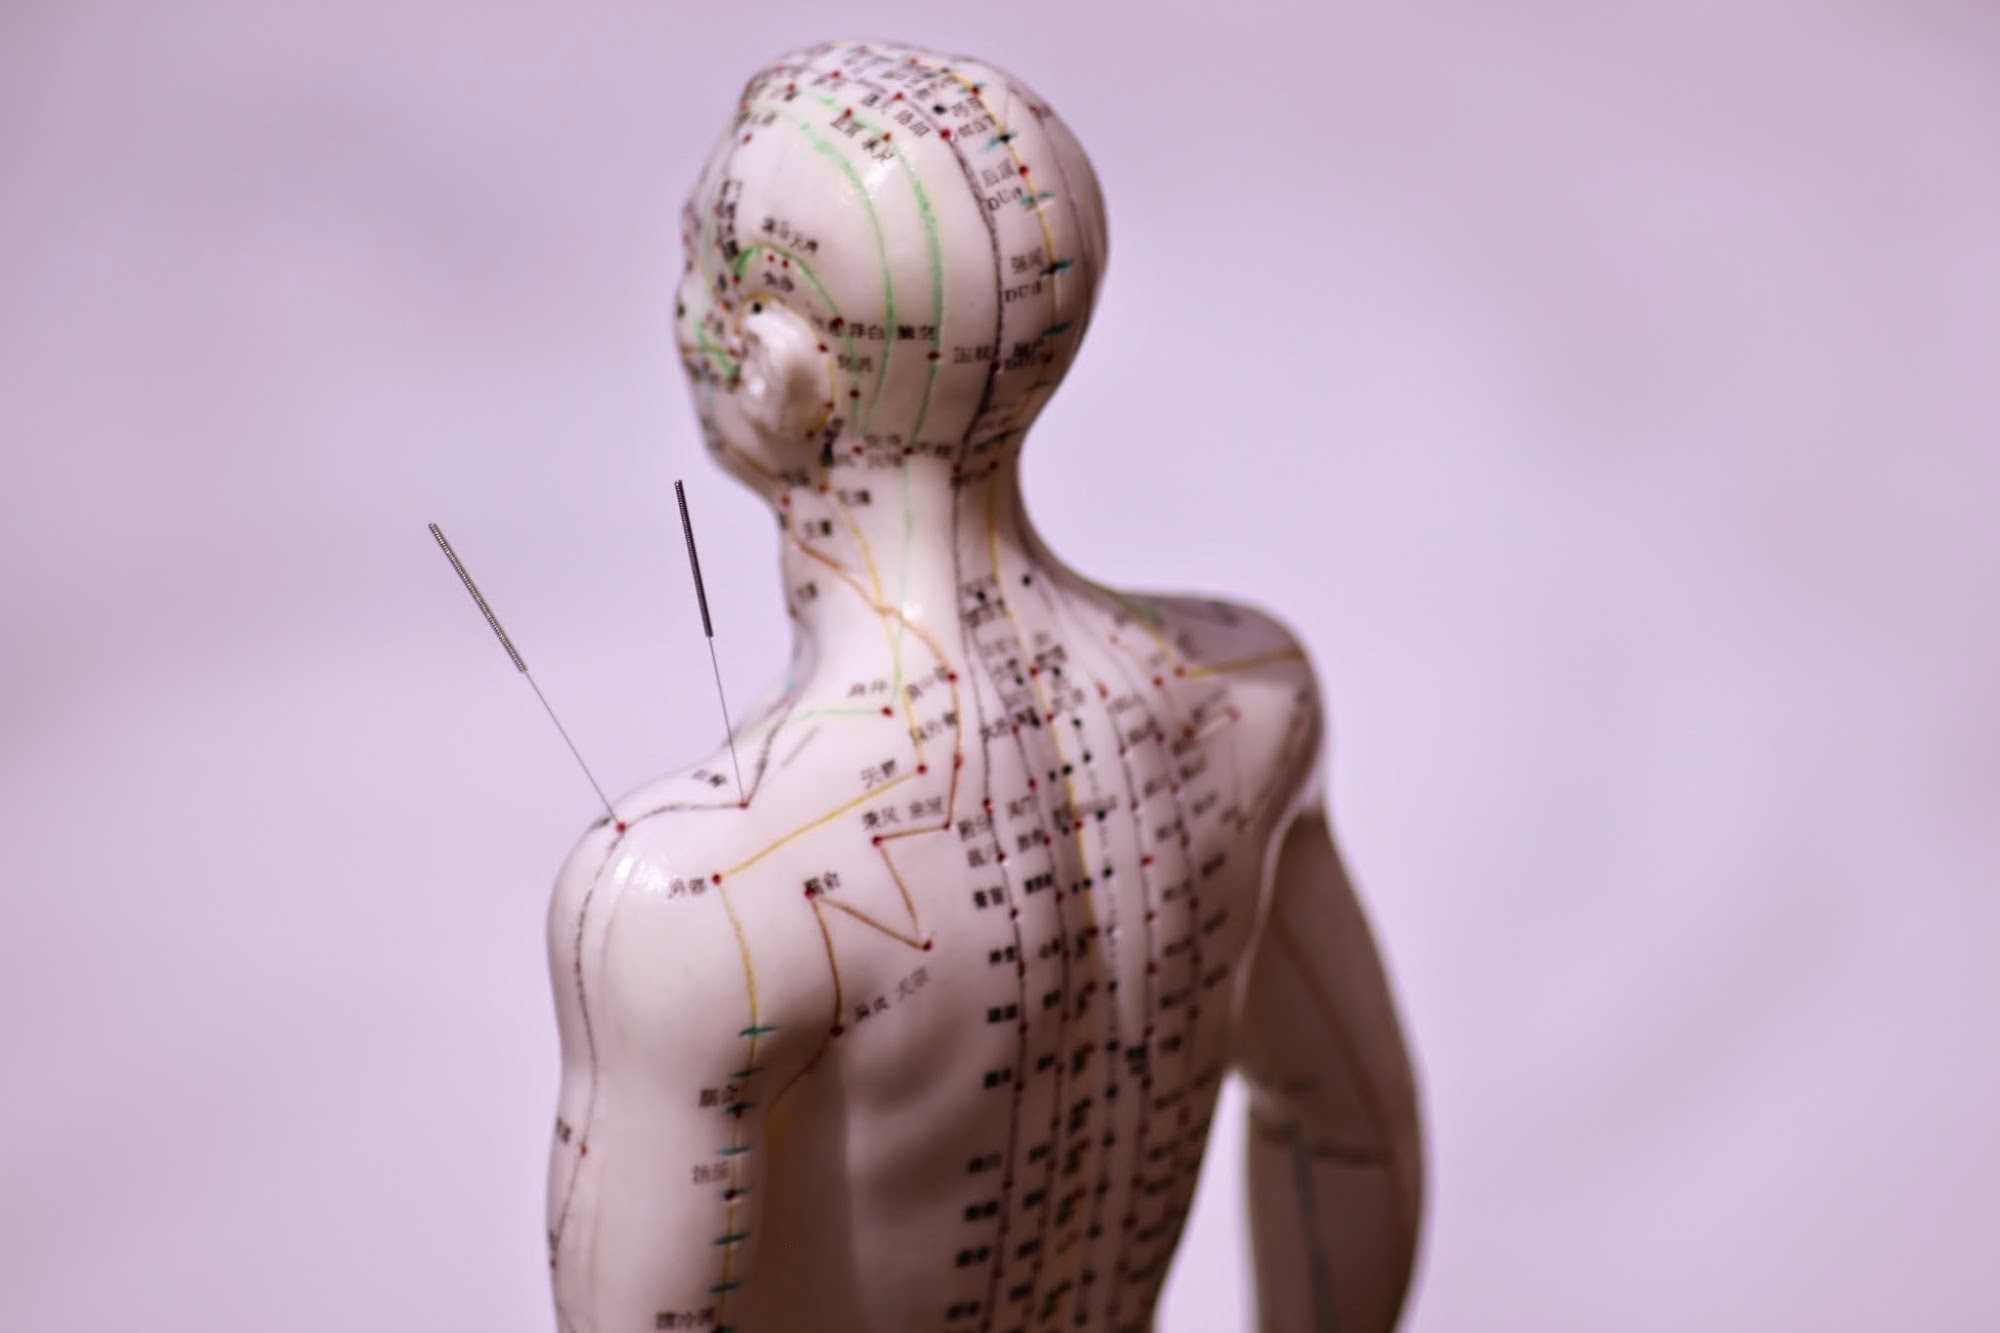 Acupuncture Plus